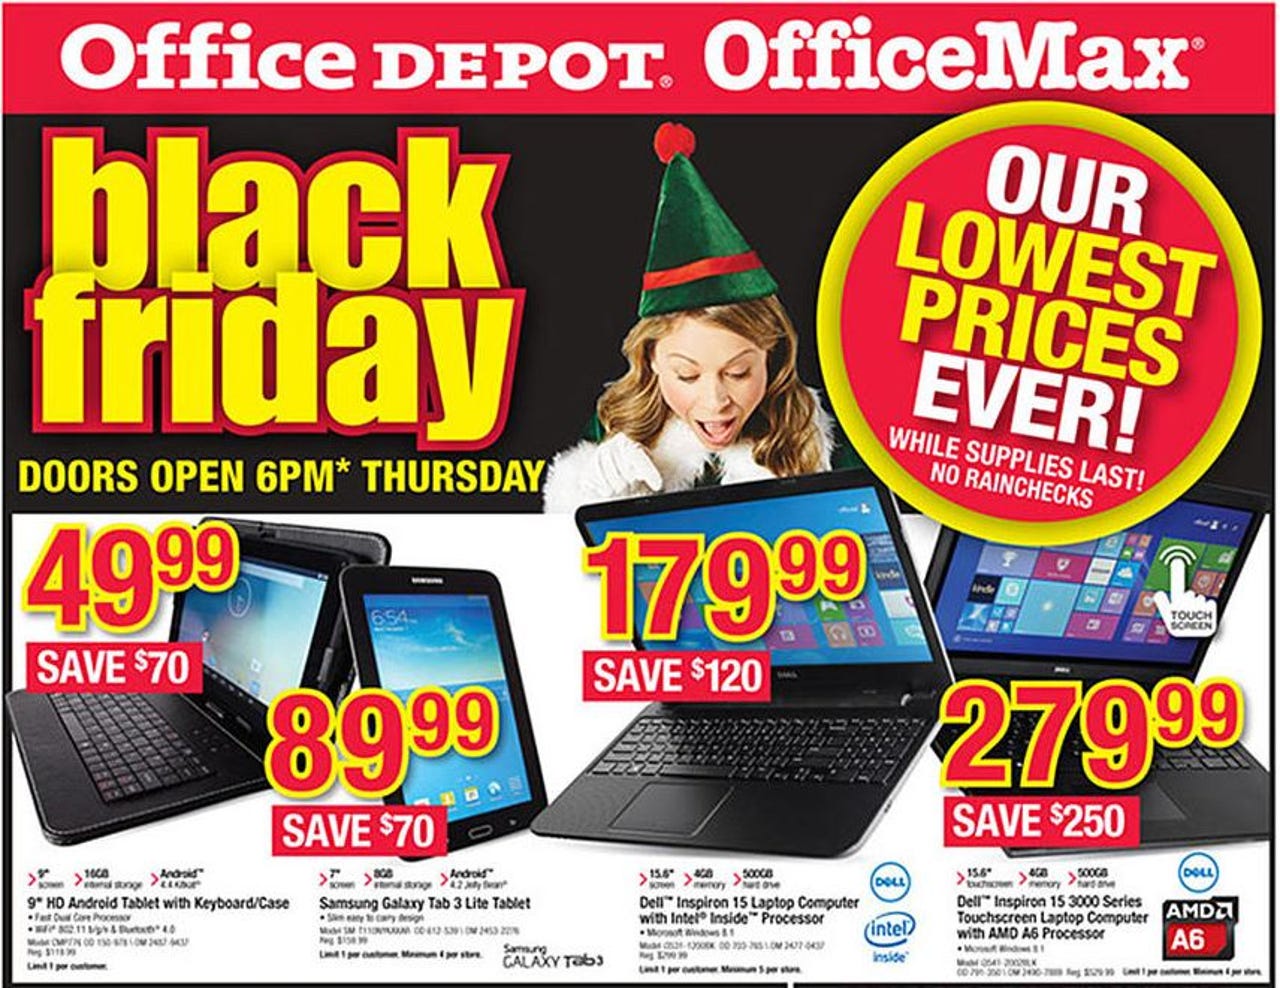 officemax-office-depot-black-friday-2014-ad-sales-deals-tablets-laptops-desktops